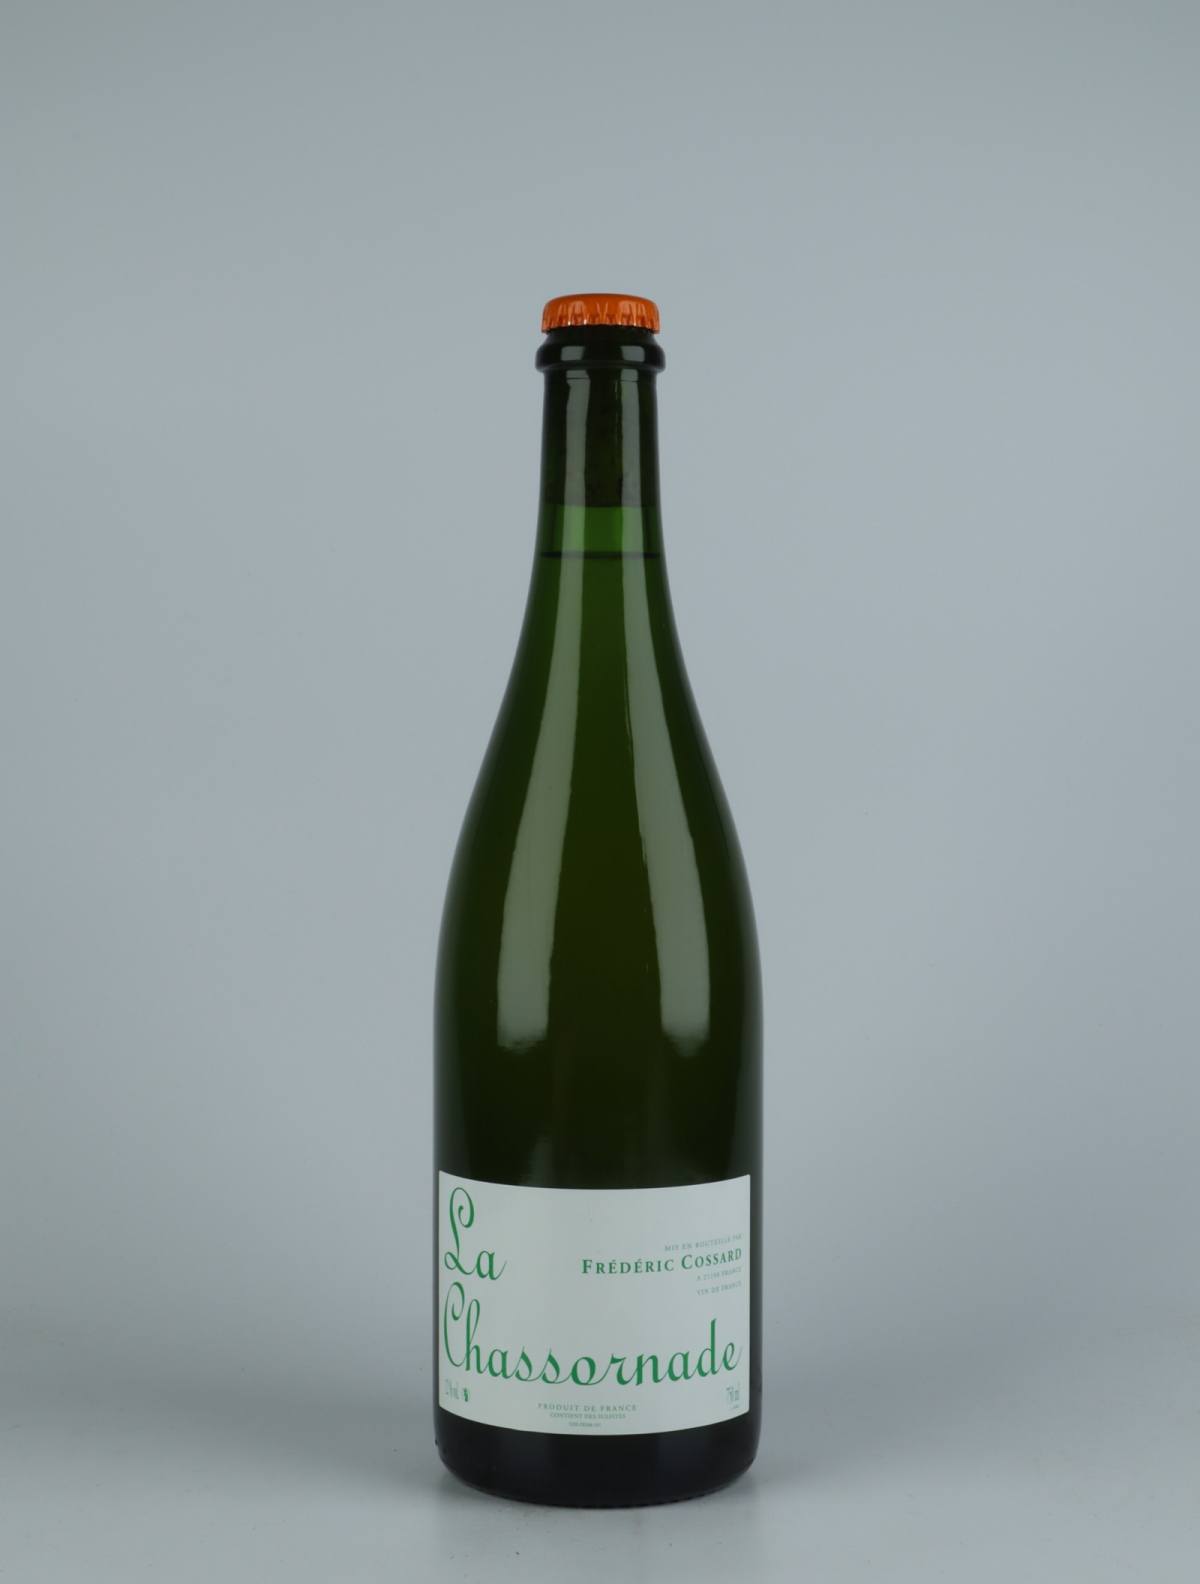 En flaske 2020 Chassornade Mousserende fra Frédéric Cossard, Bourgogne i Frankrig